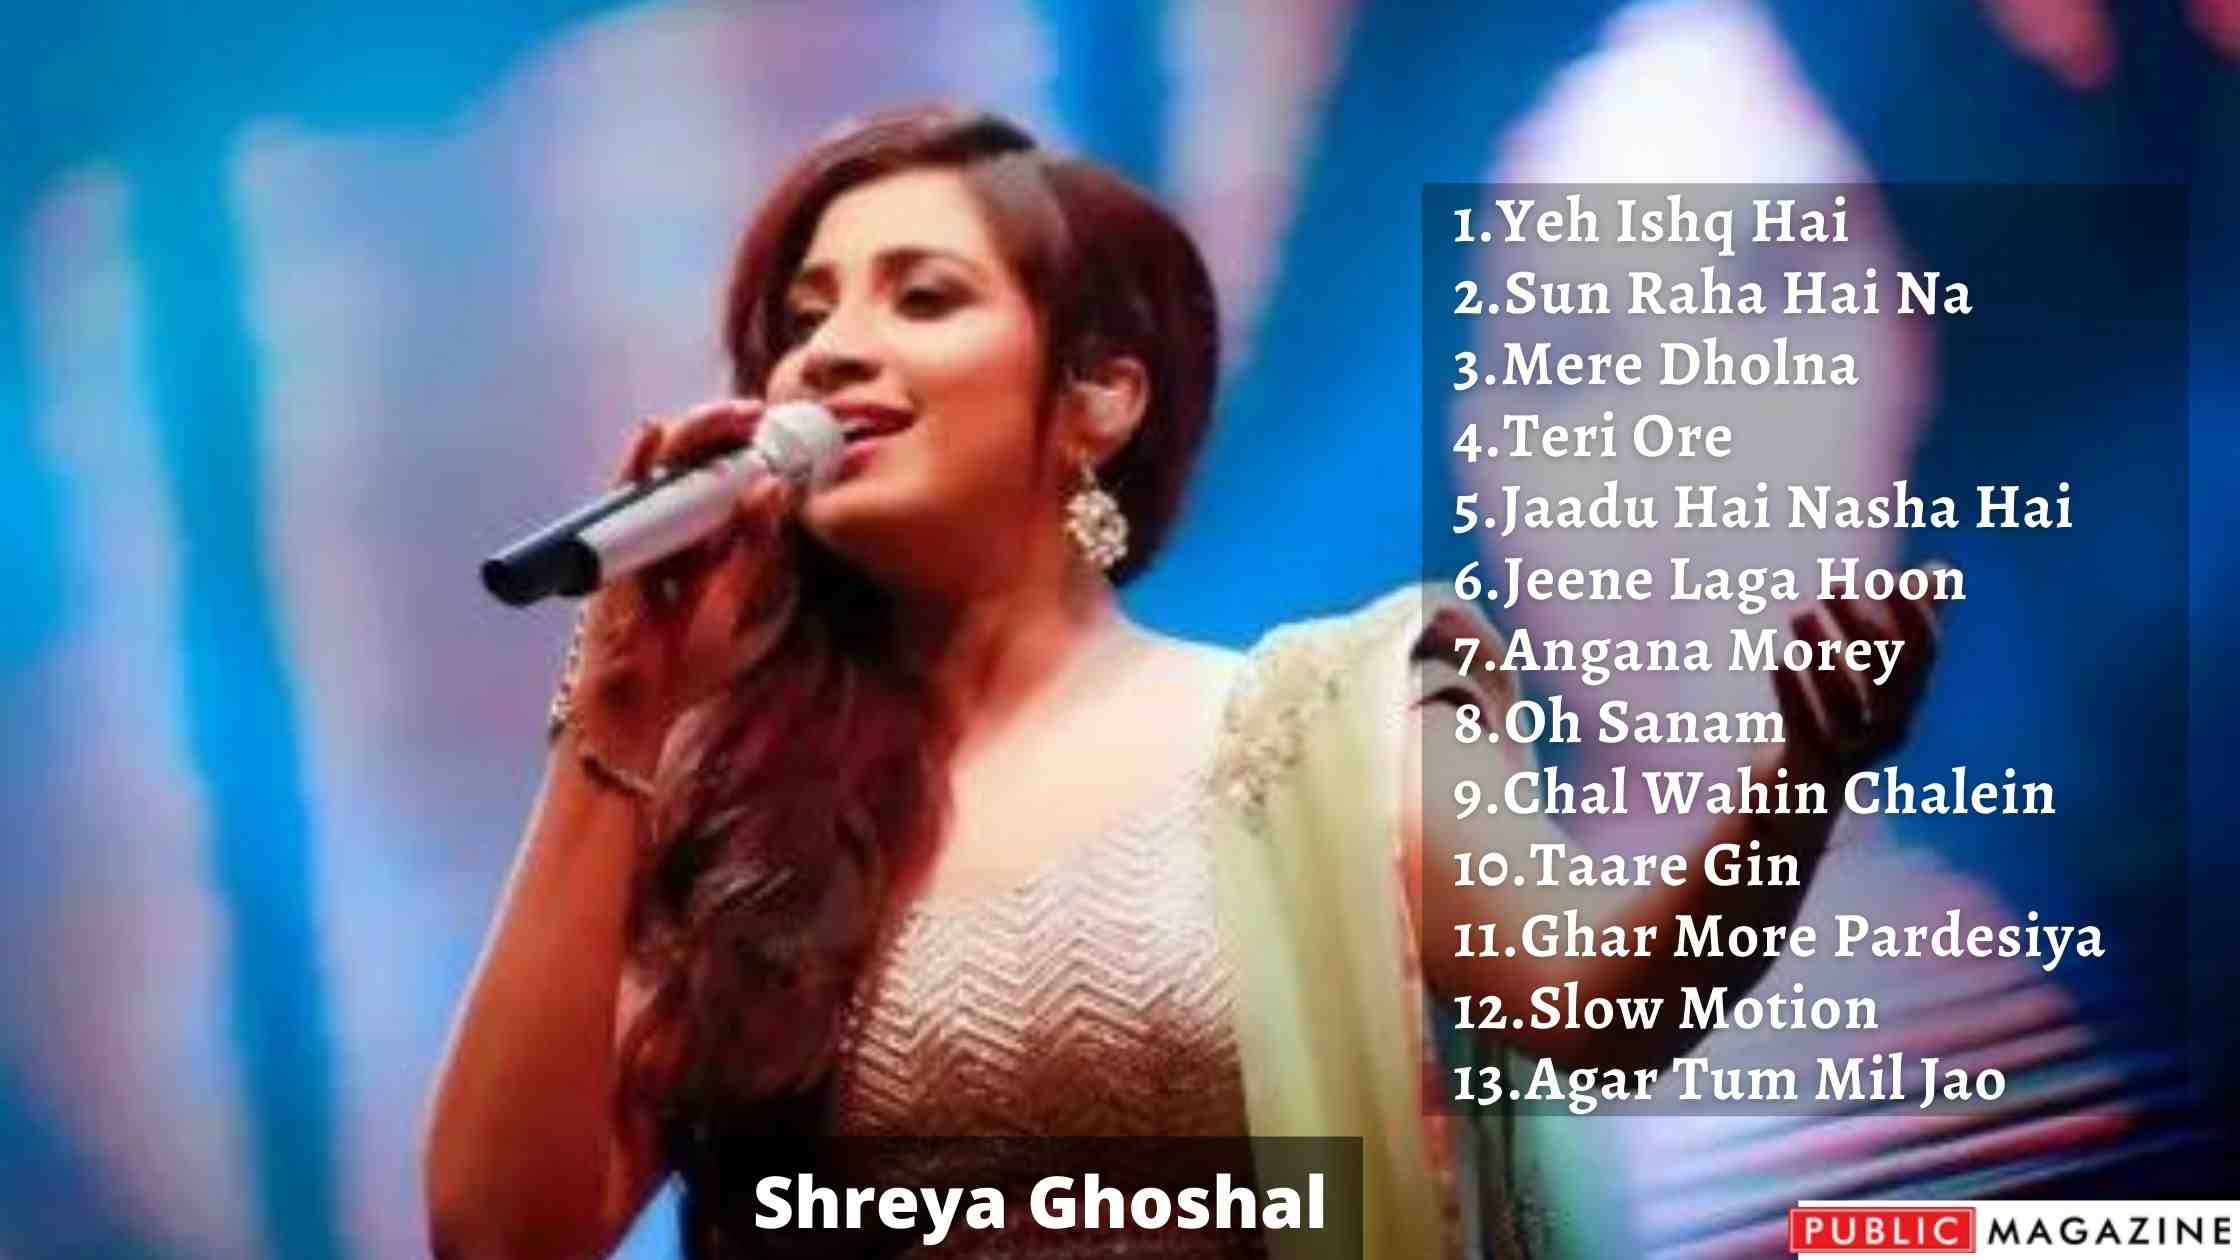 Shreya Ghoshal Biography, Wiki, Songs, And Awards